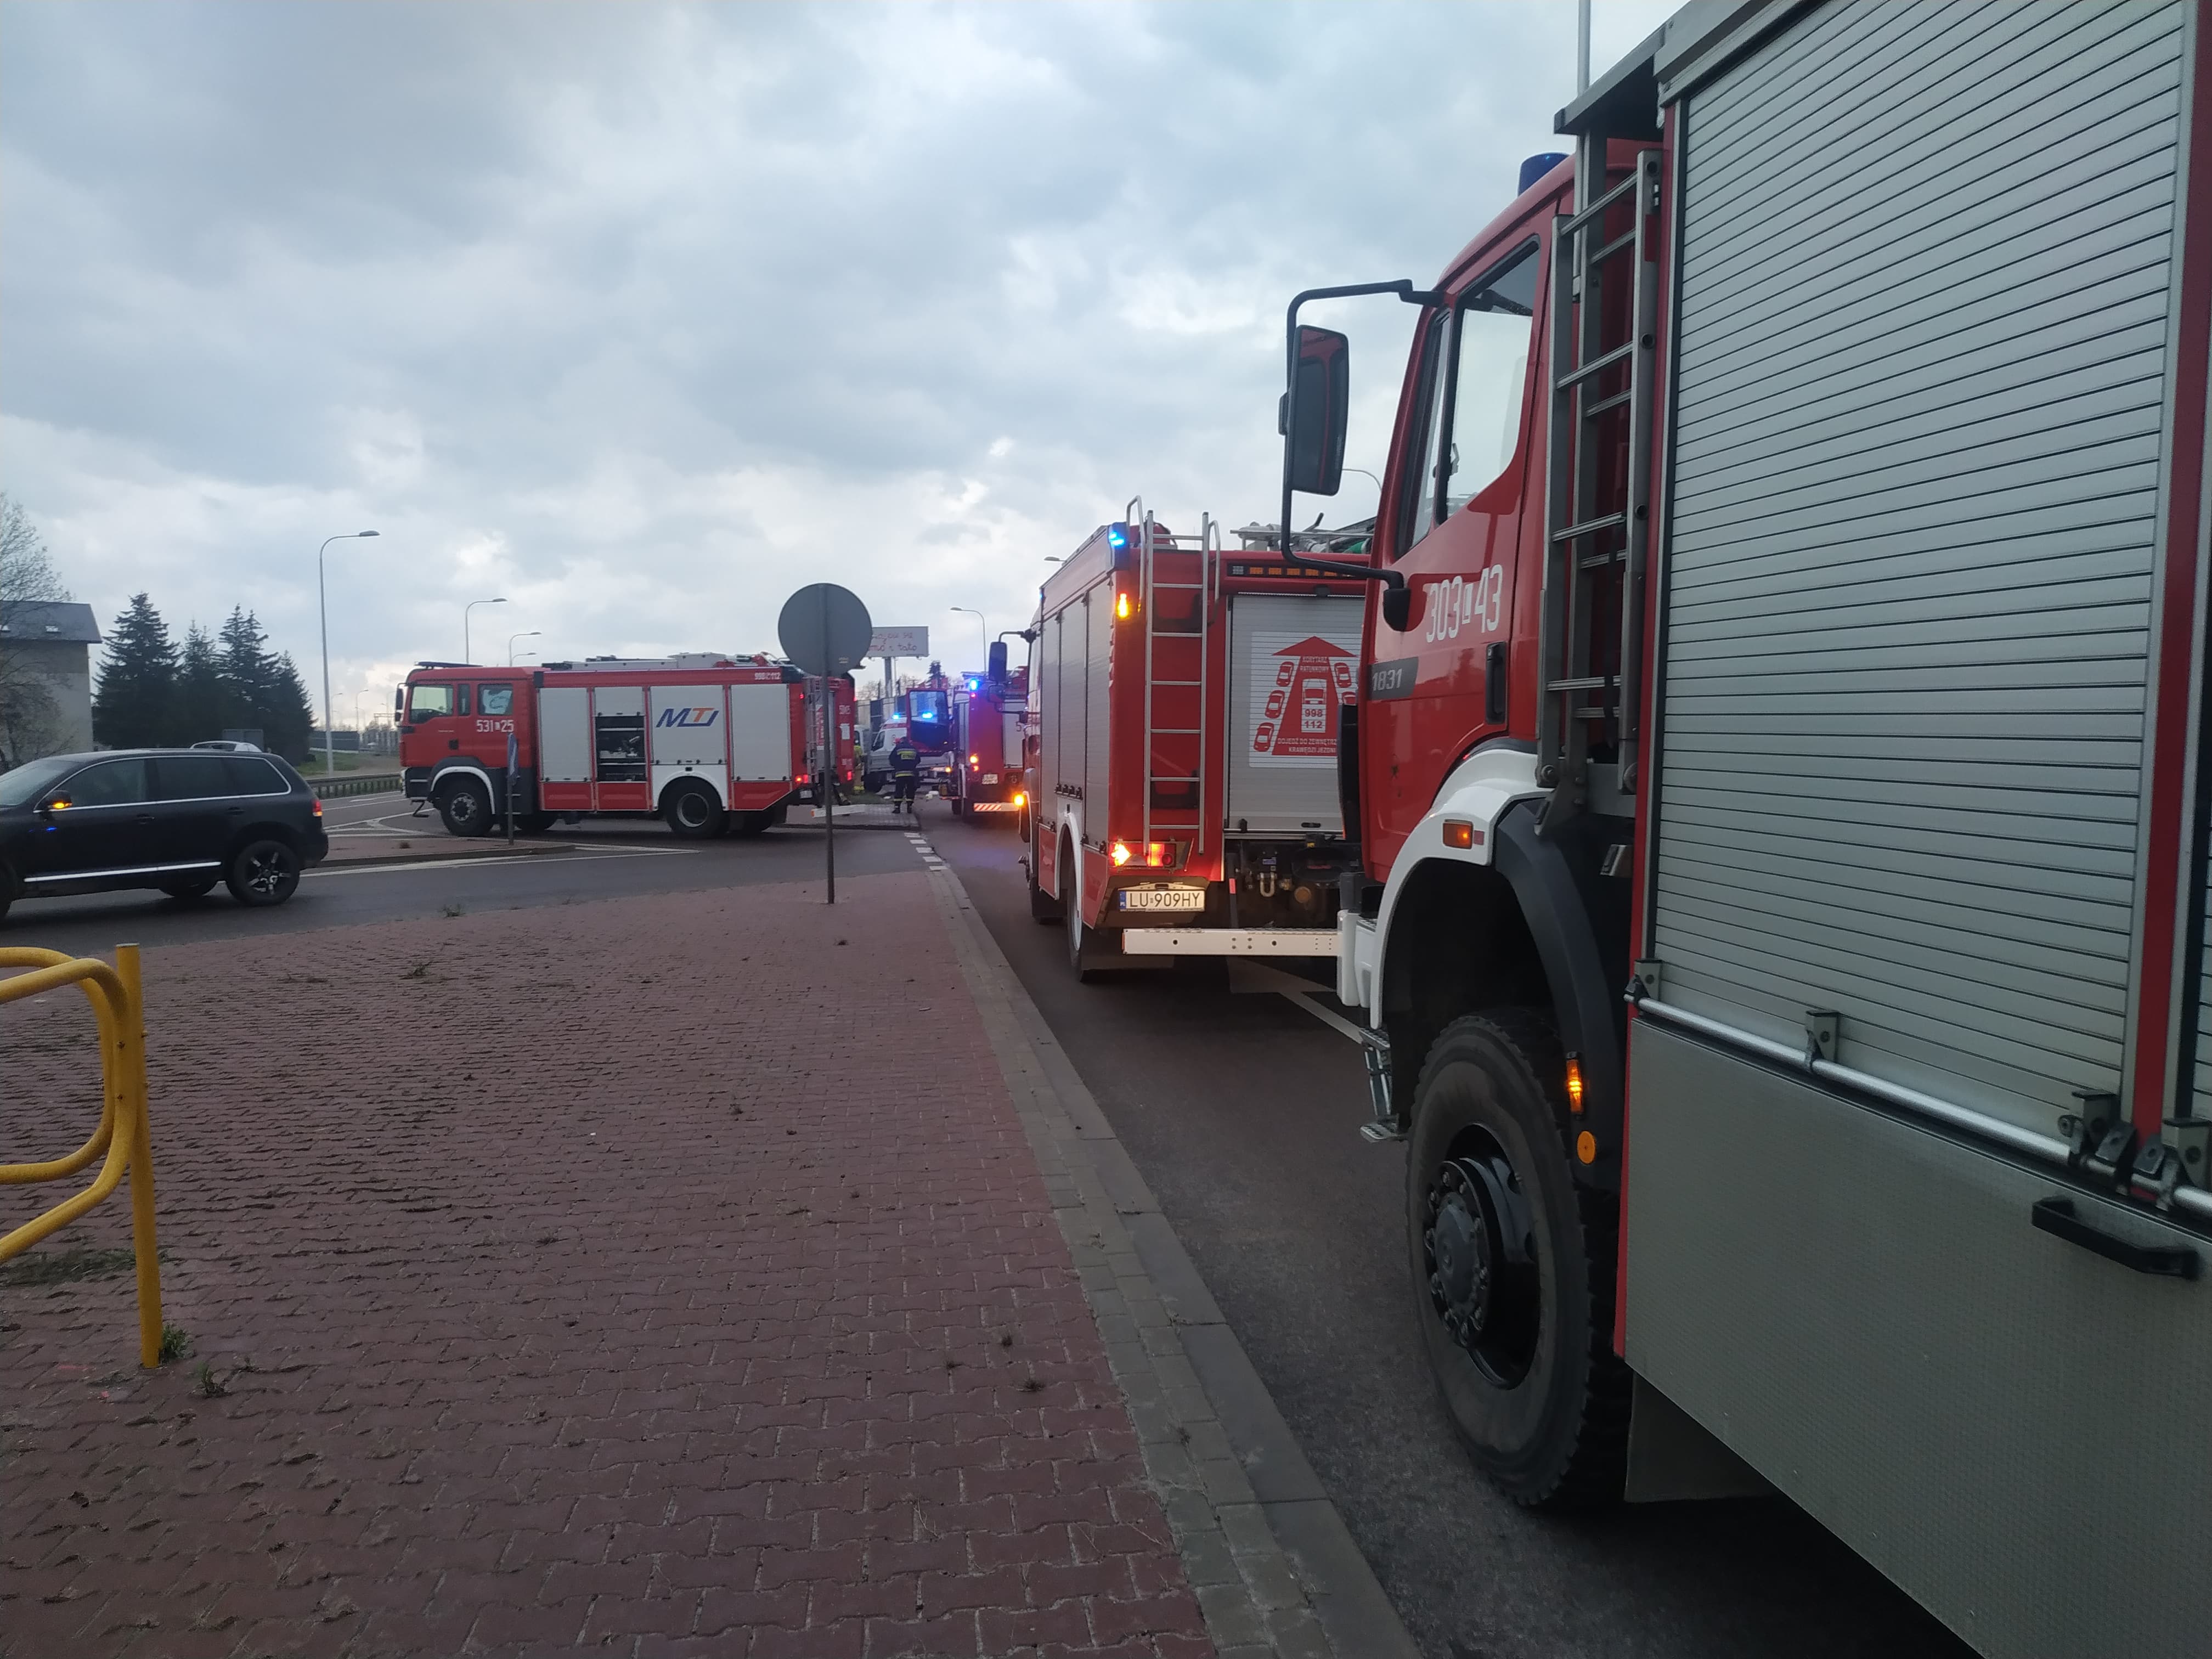 Tragiczny wypadek na wjeździe do Lublina, jedna osoba nie żyje. Kilka jest rannych, trwa akcja ratunkowa (zdjęcia)